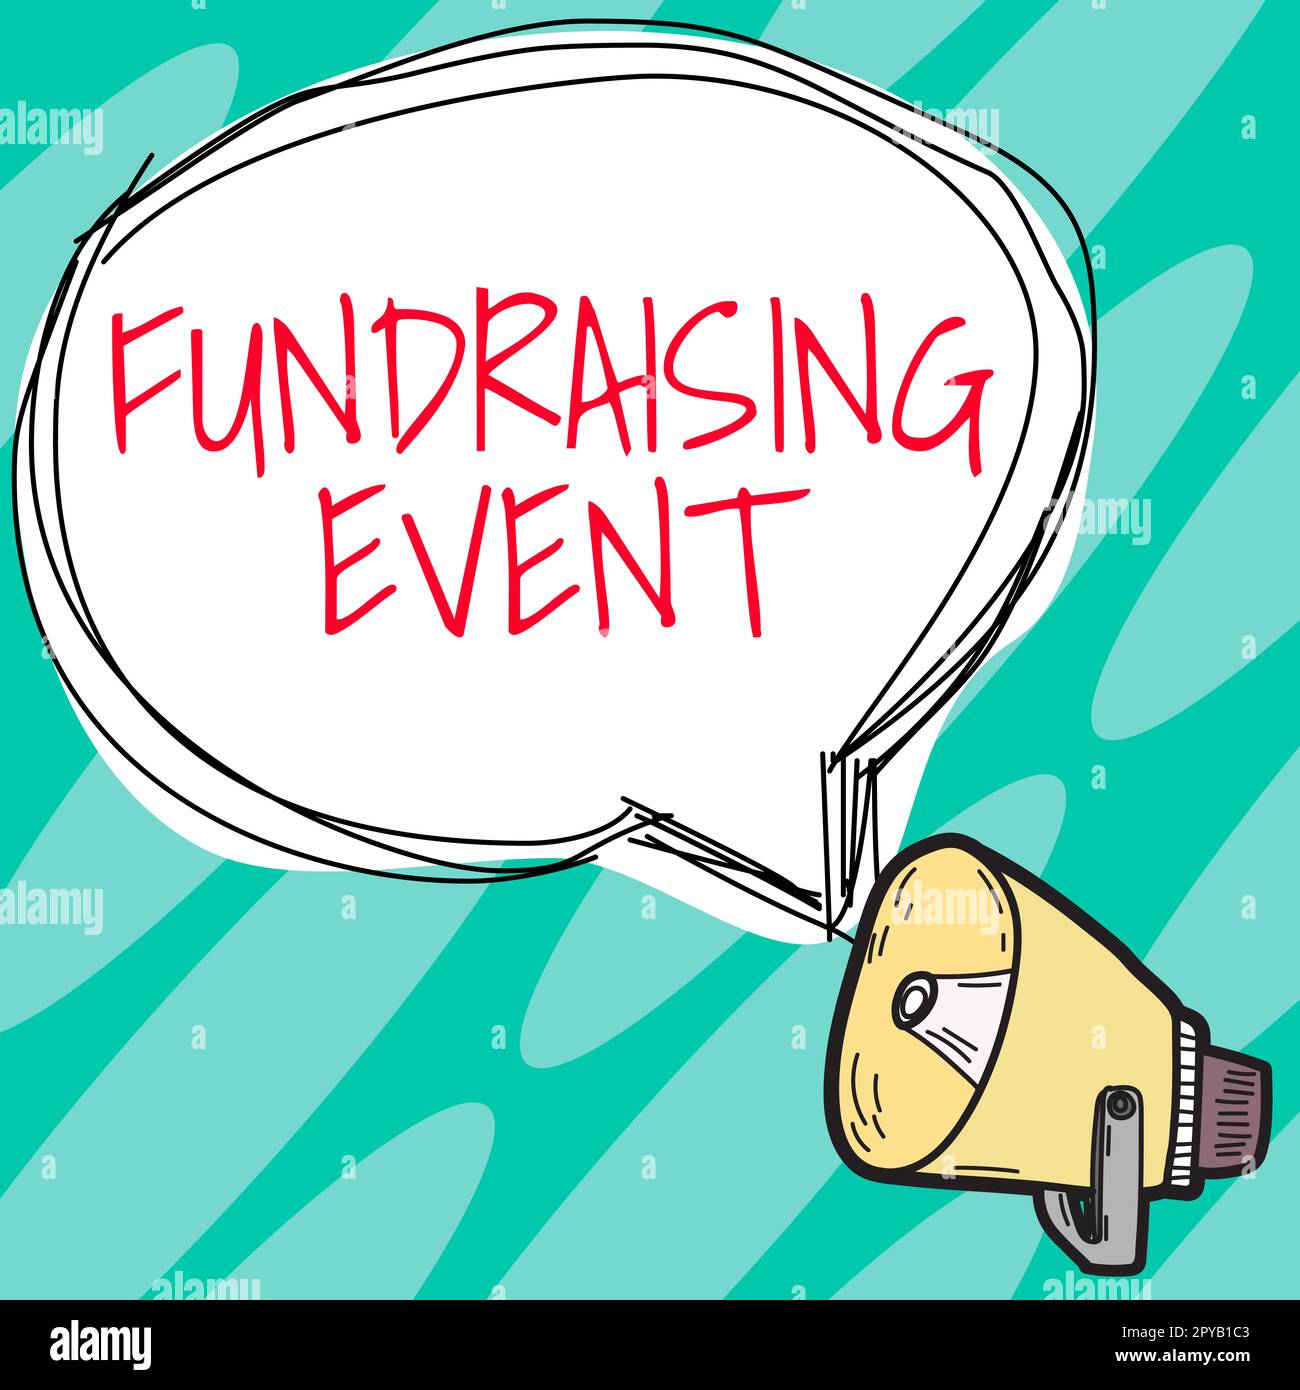 Handgeschriebenes Schild Fundraising Event. Eine Business-Showcase-Kampagne, deren Zweck es ist, Geld für eine Sache zu sammeln Stockfoto